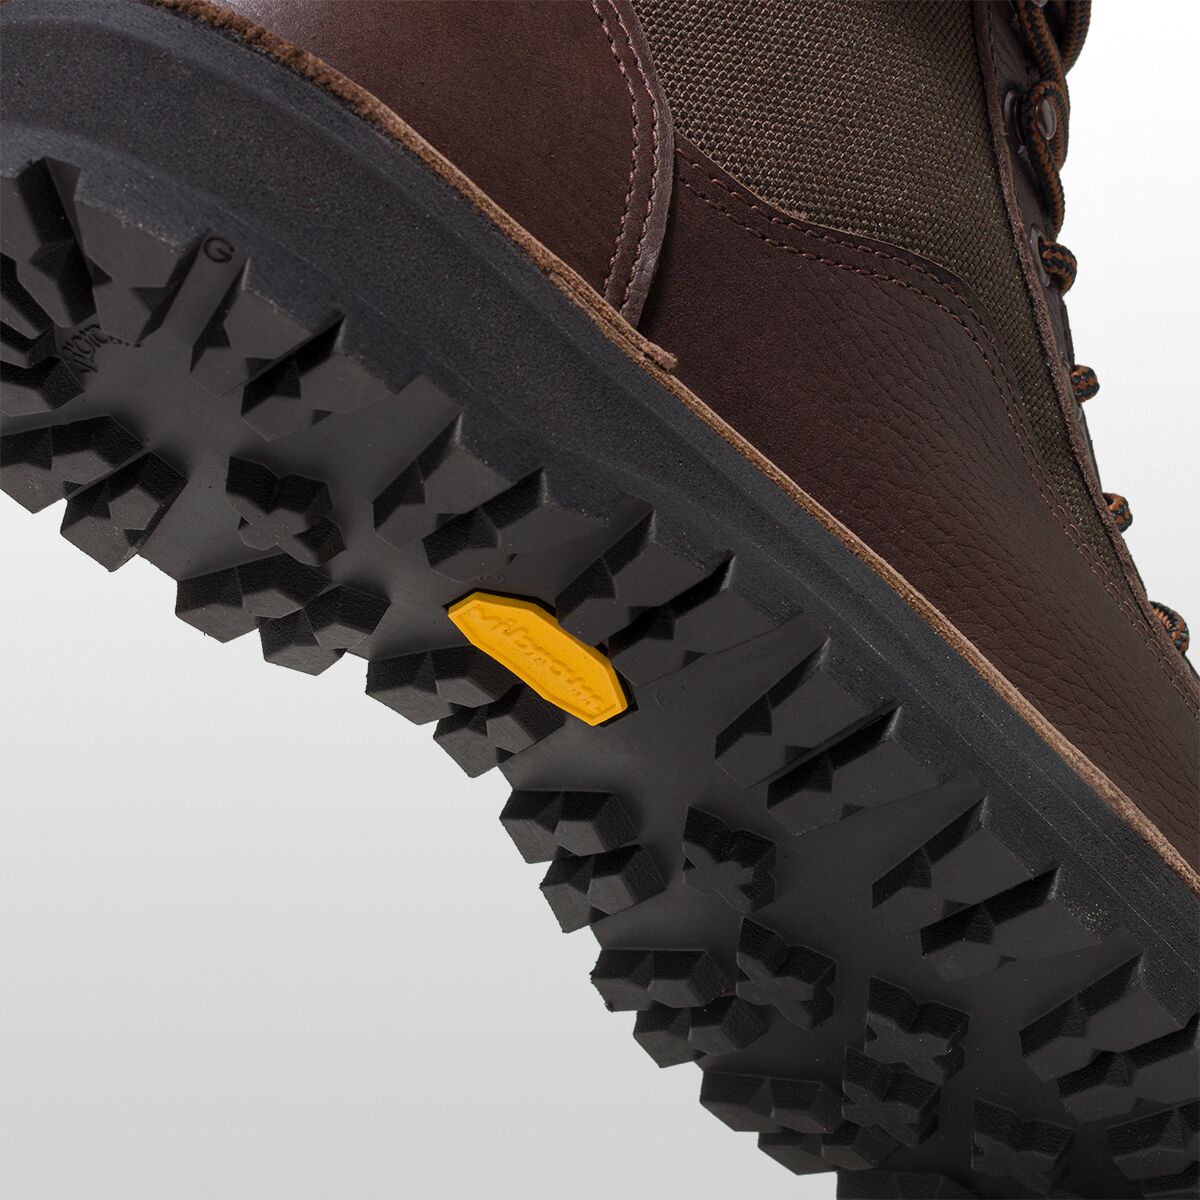 Danner Light II GTX Hiking Boot - Men's - Footwear